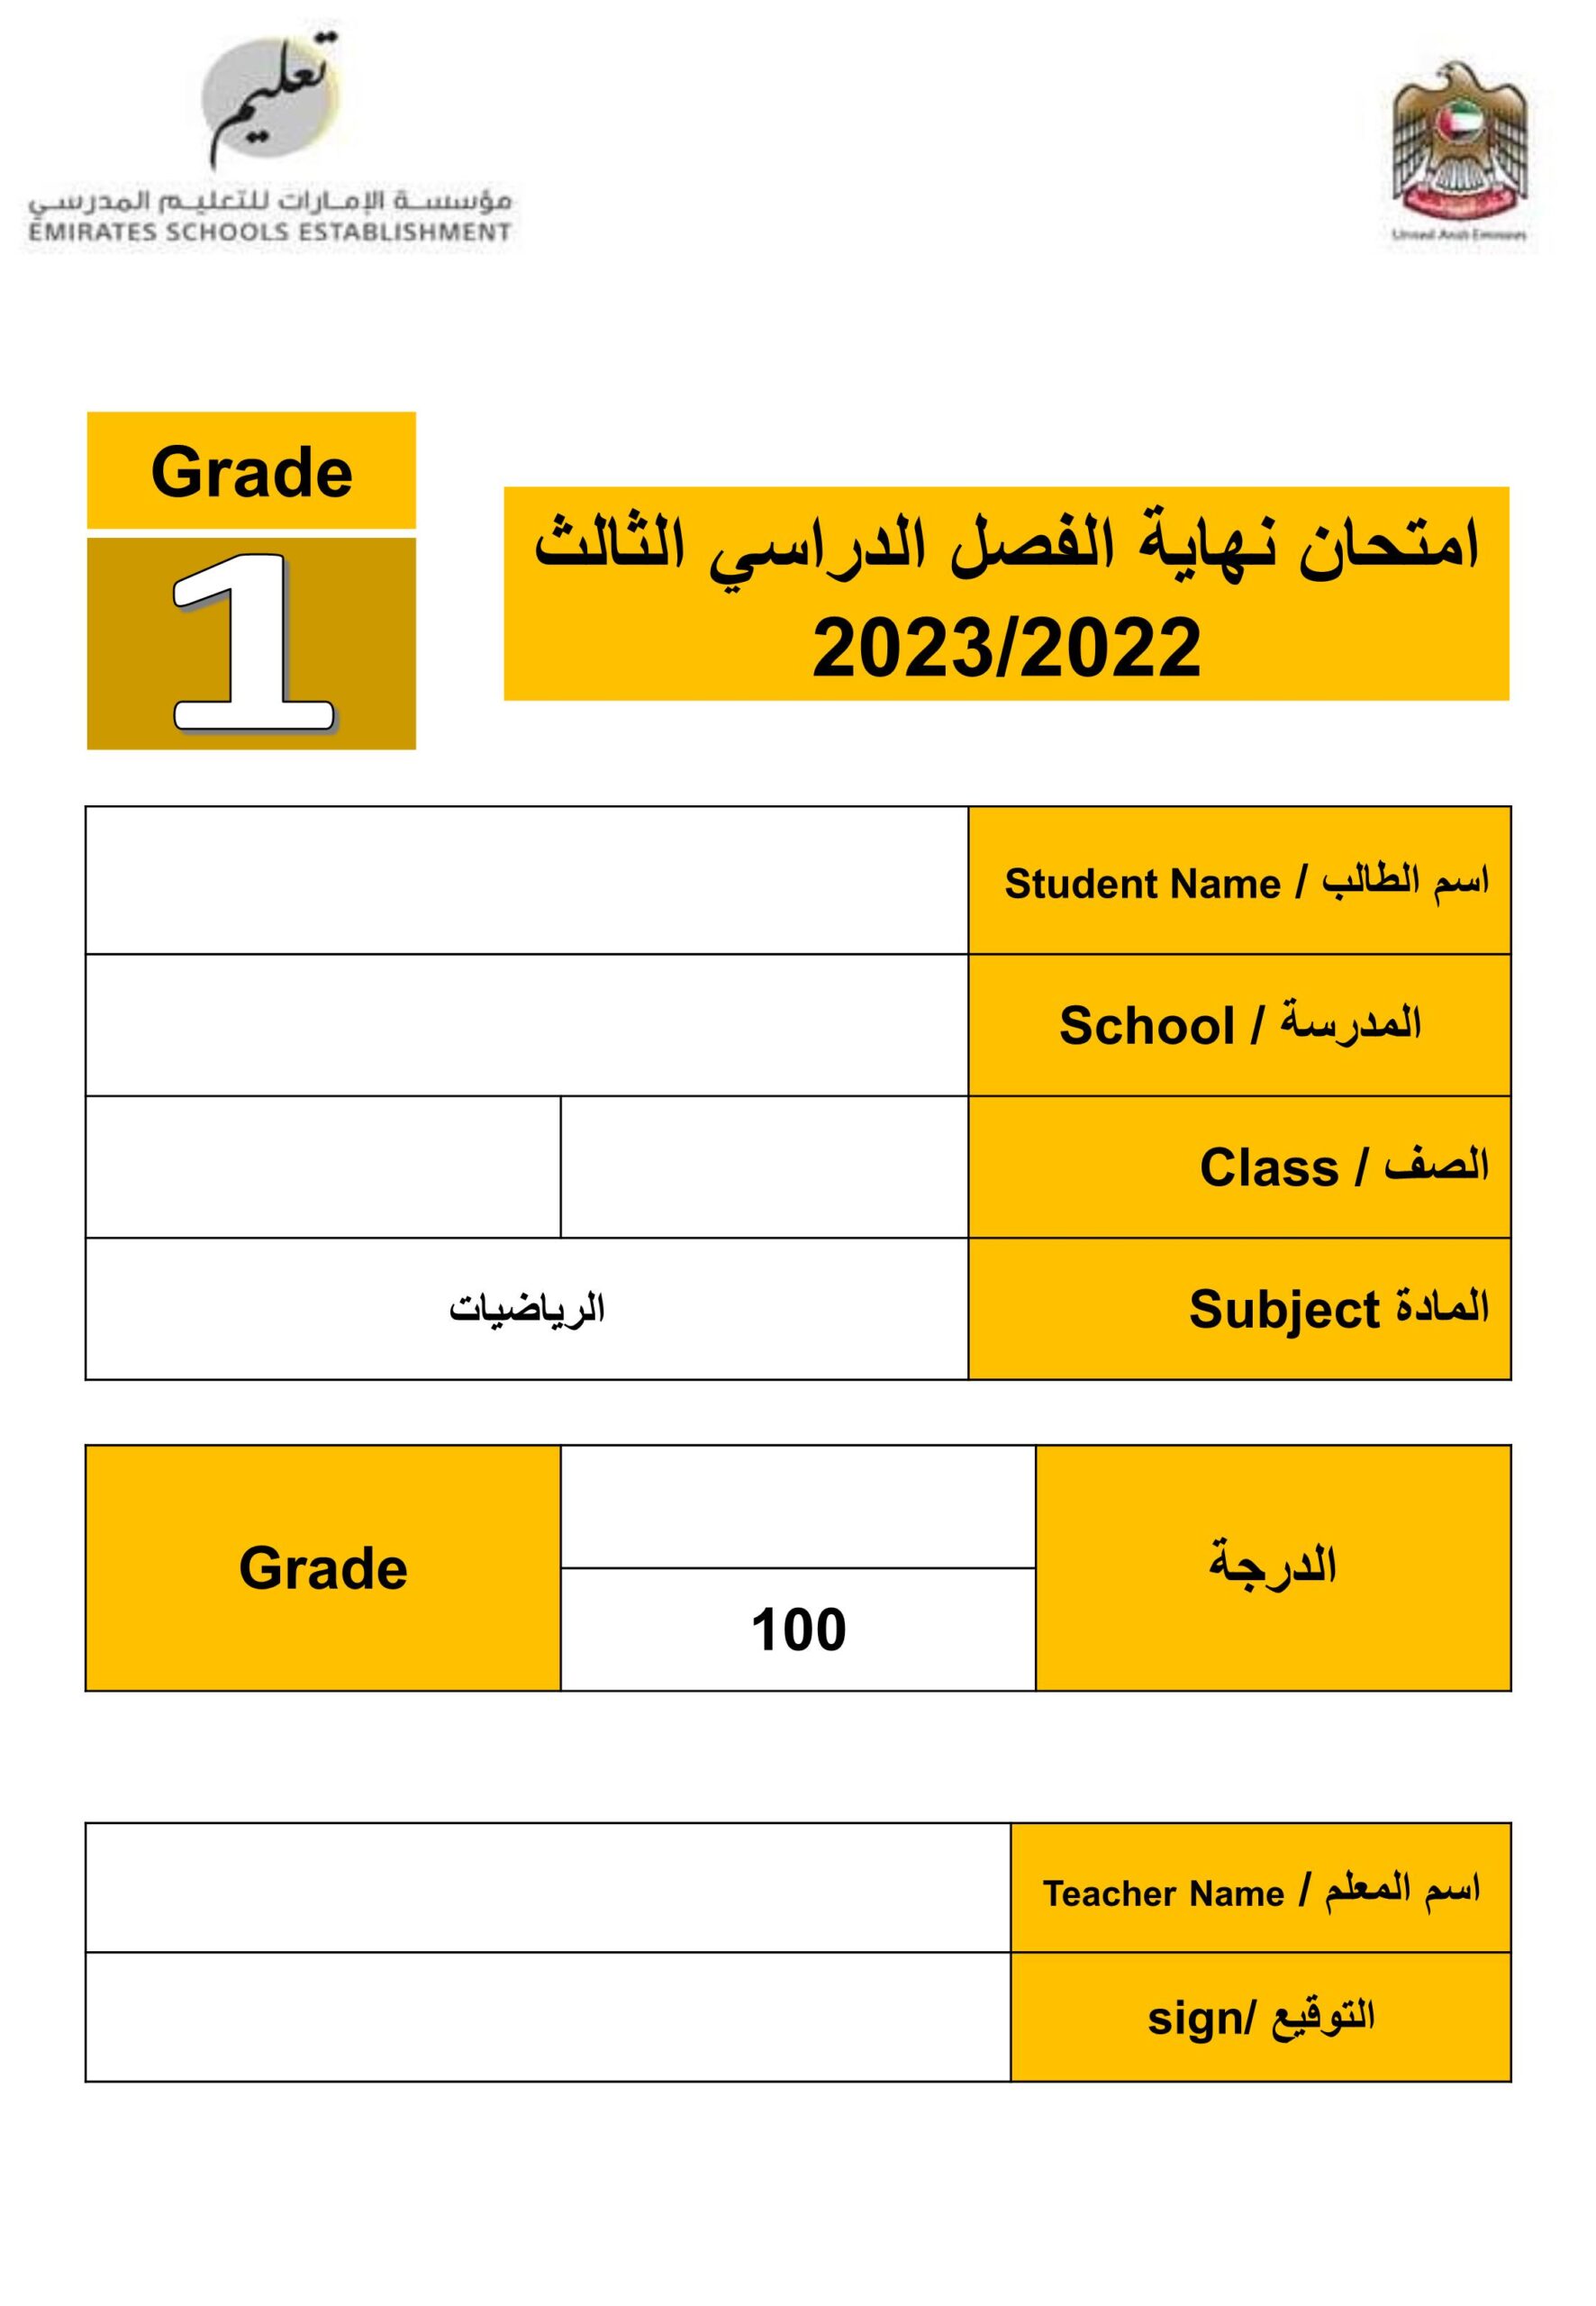 امتحان نهاية الفصل الرياضيات المتكاملة الصف الأول الفصل الدراسي الثالث 2022-2023